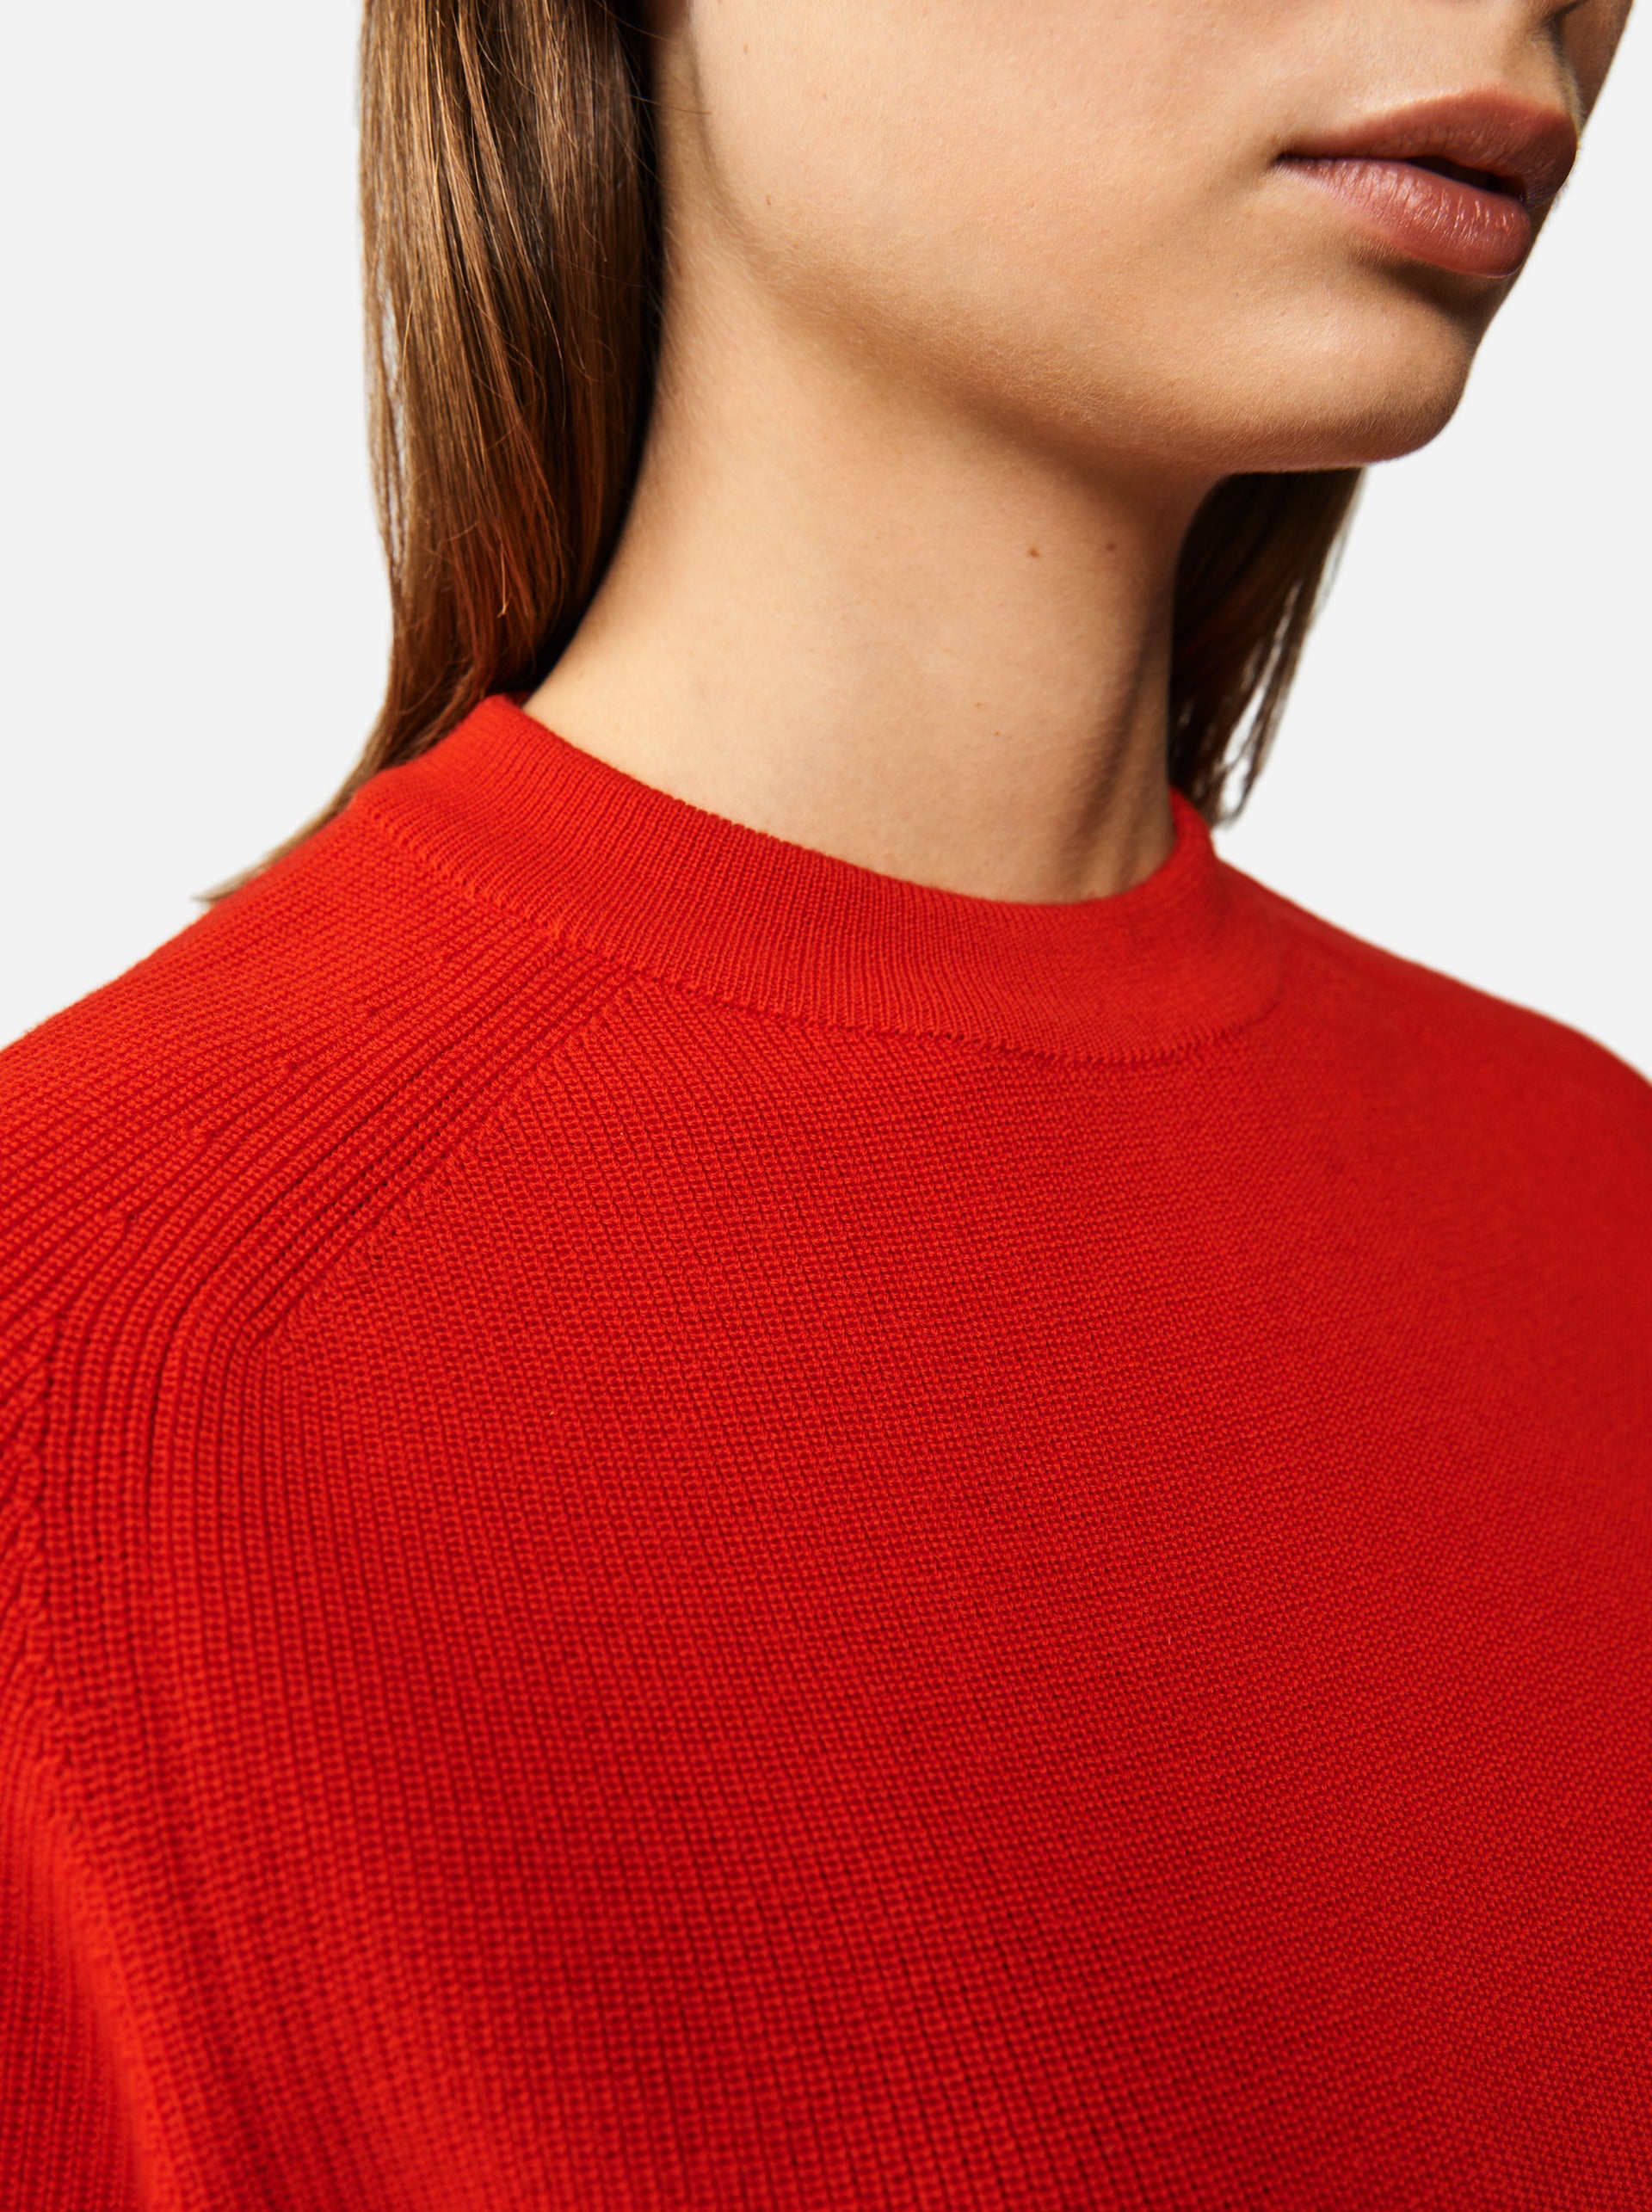 Teym • The Merino Sweater for women • Crewneck • Red • 100% Merino wool